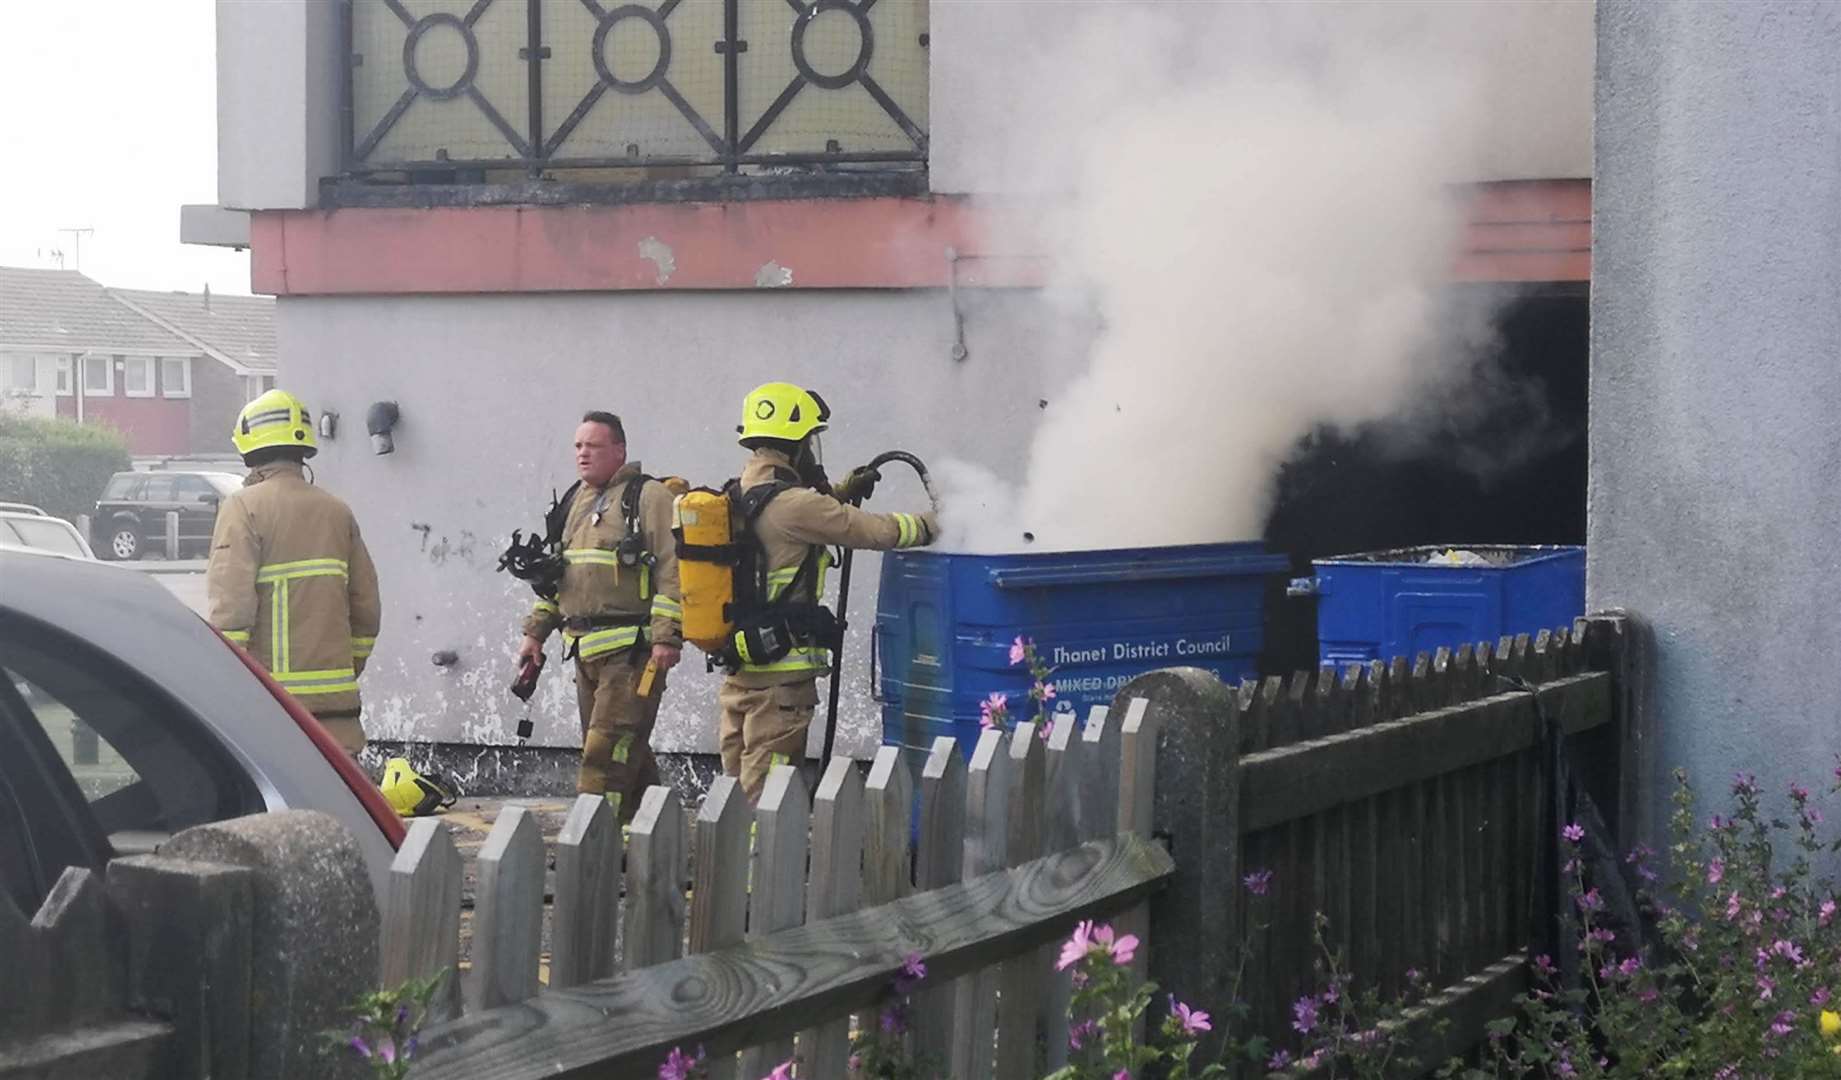 A bin blaze at the flats Pic: Li Jean-Luc Harris